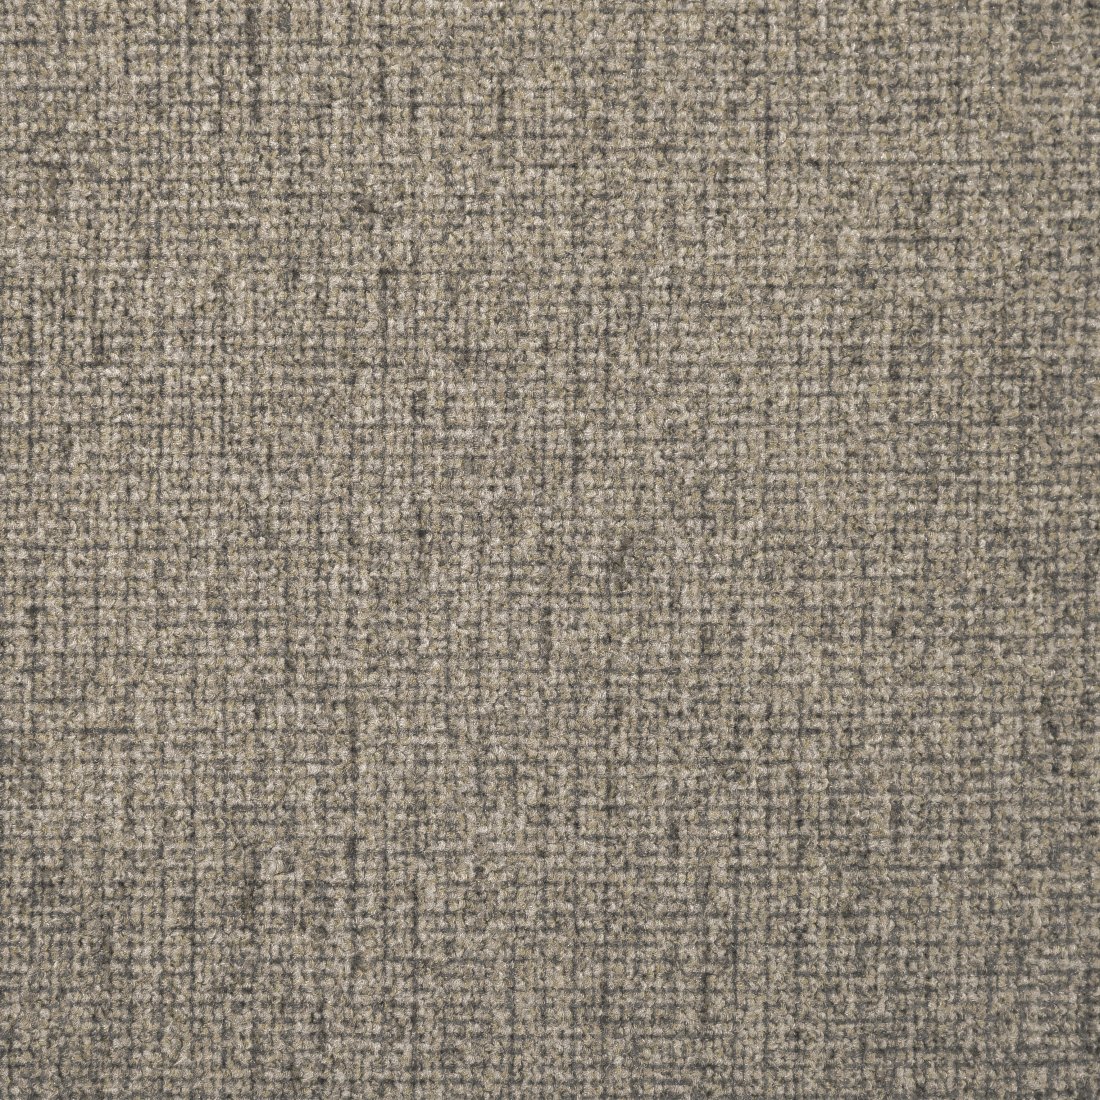 Paros Loop Pile Carpet - Beige/Brown 39